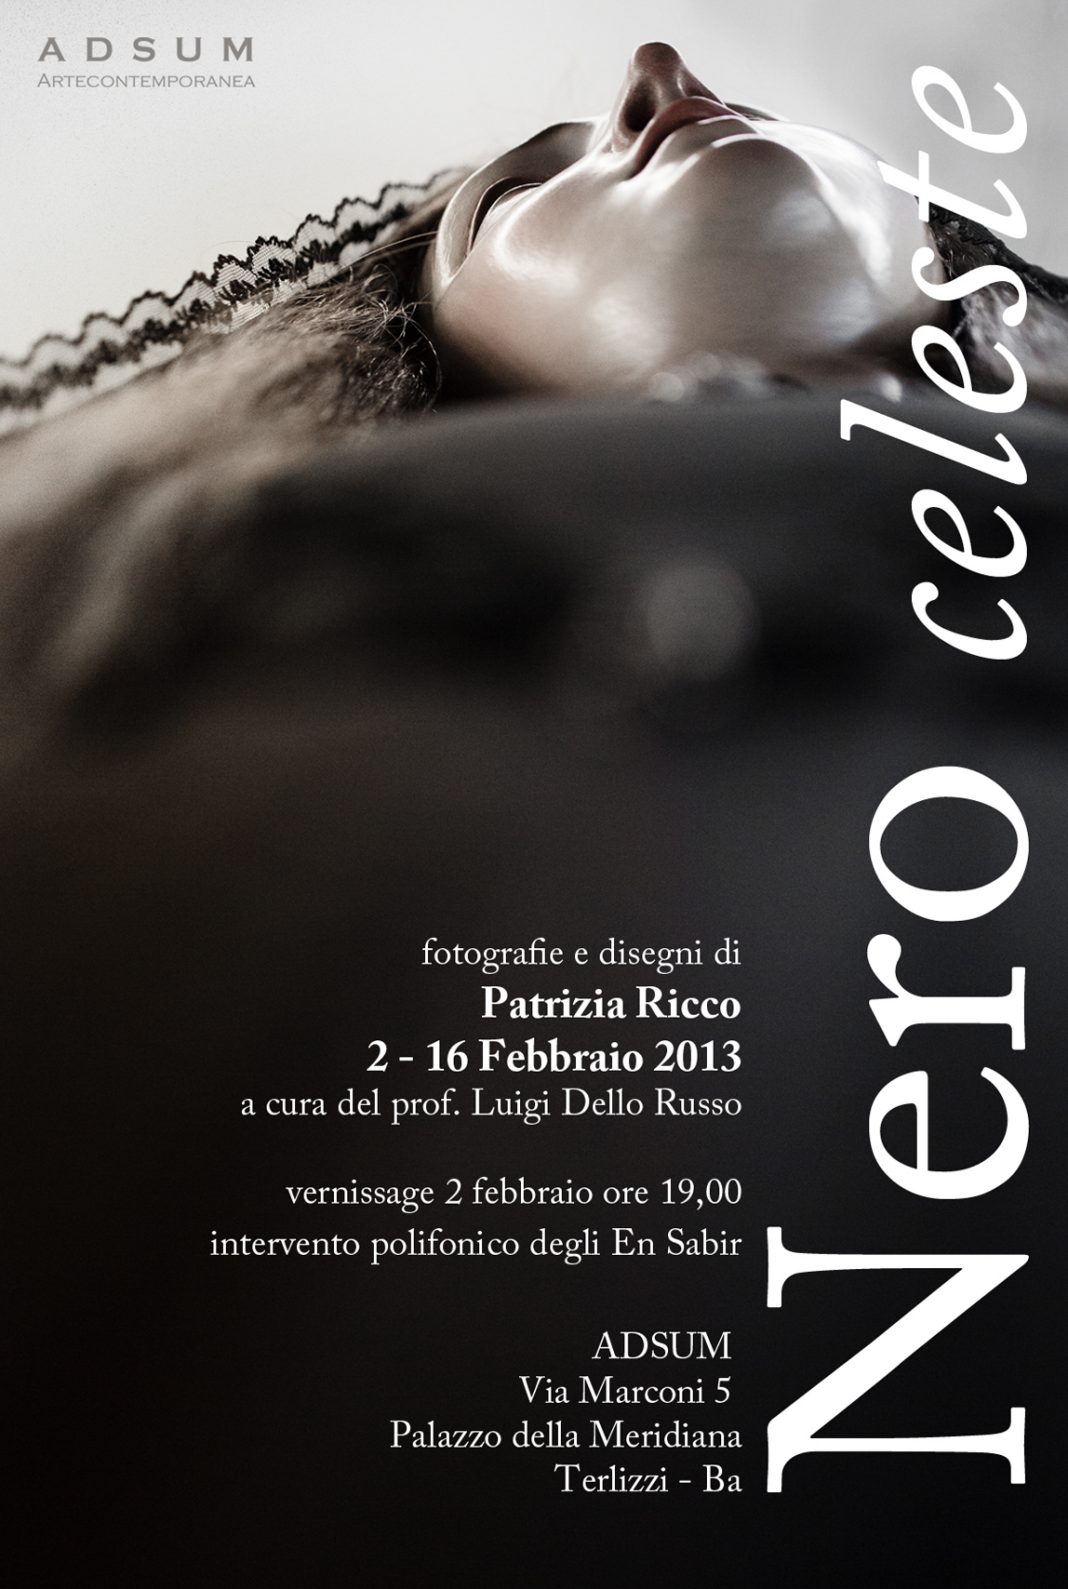 Patrizia Ricco – Nero Celestehttps://www.exibart.com/repository/media/eventi/2013/01/patrizia-ricco-8211-nero-celeste-1068x1589.jpg